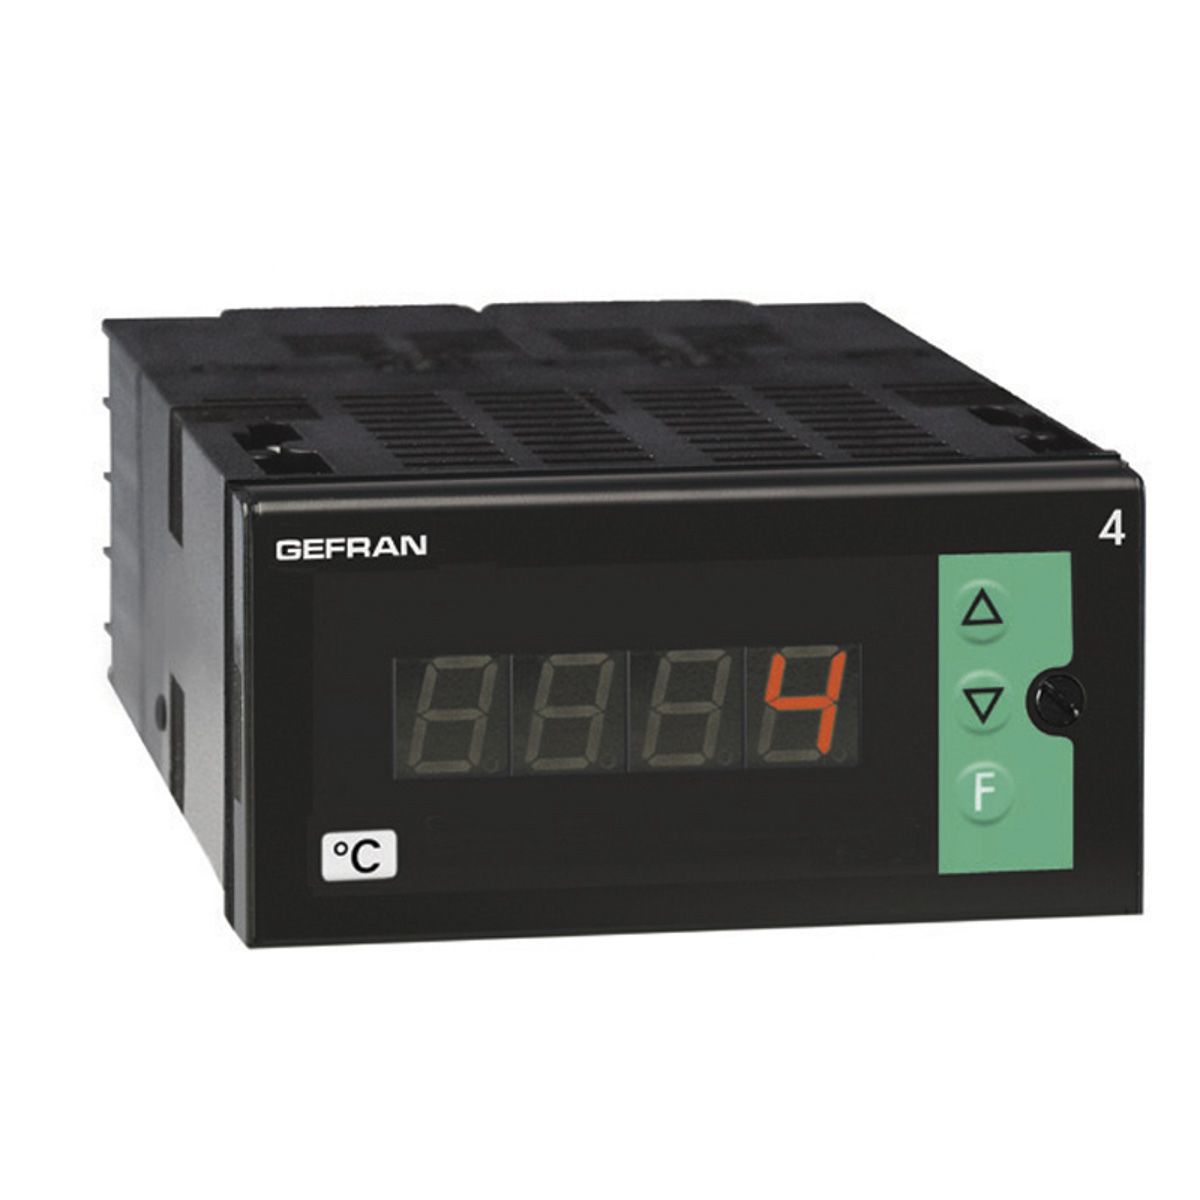 Gefran 4T-96-4-00-1 , Temperature Indicator